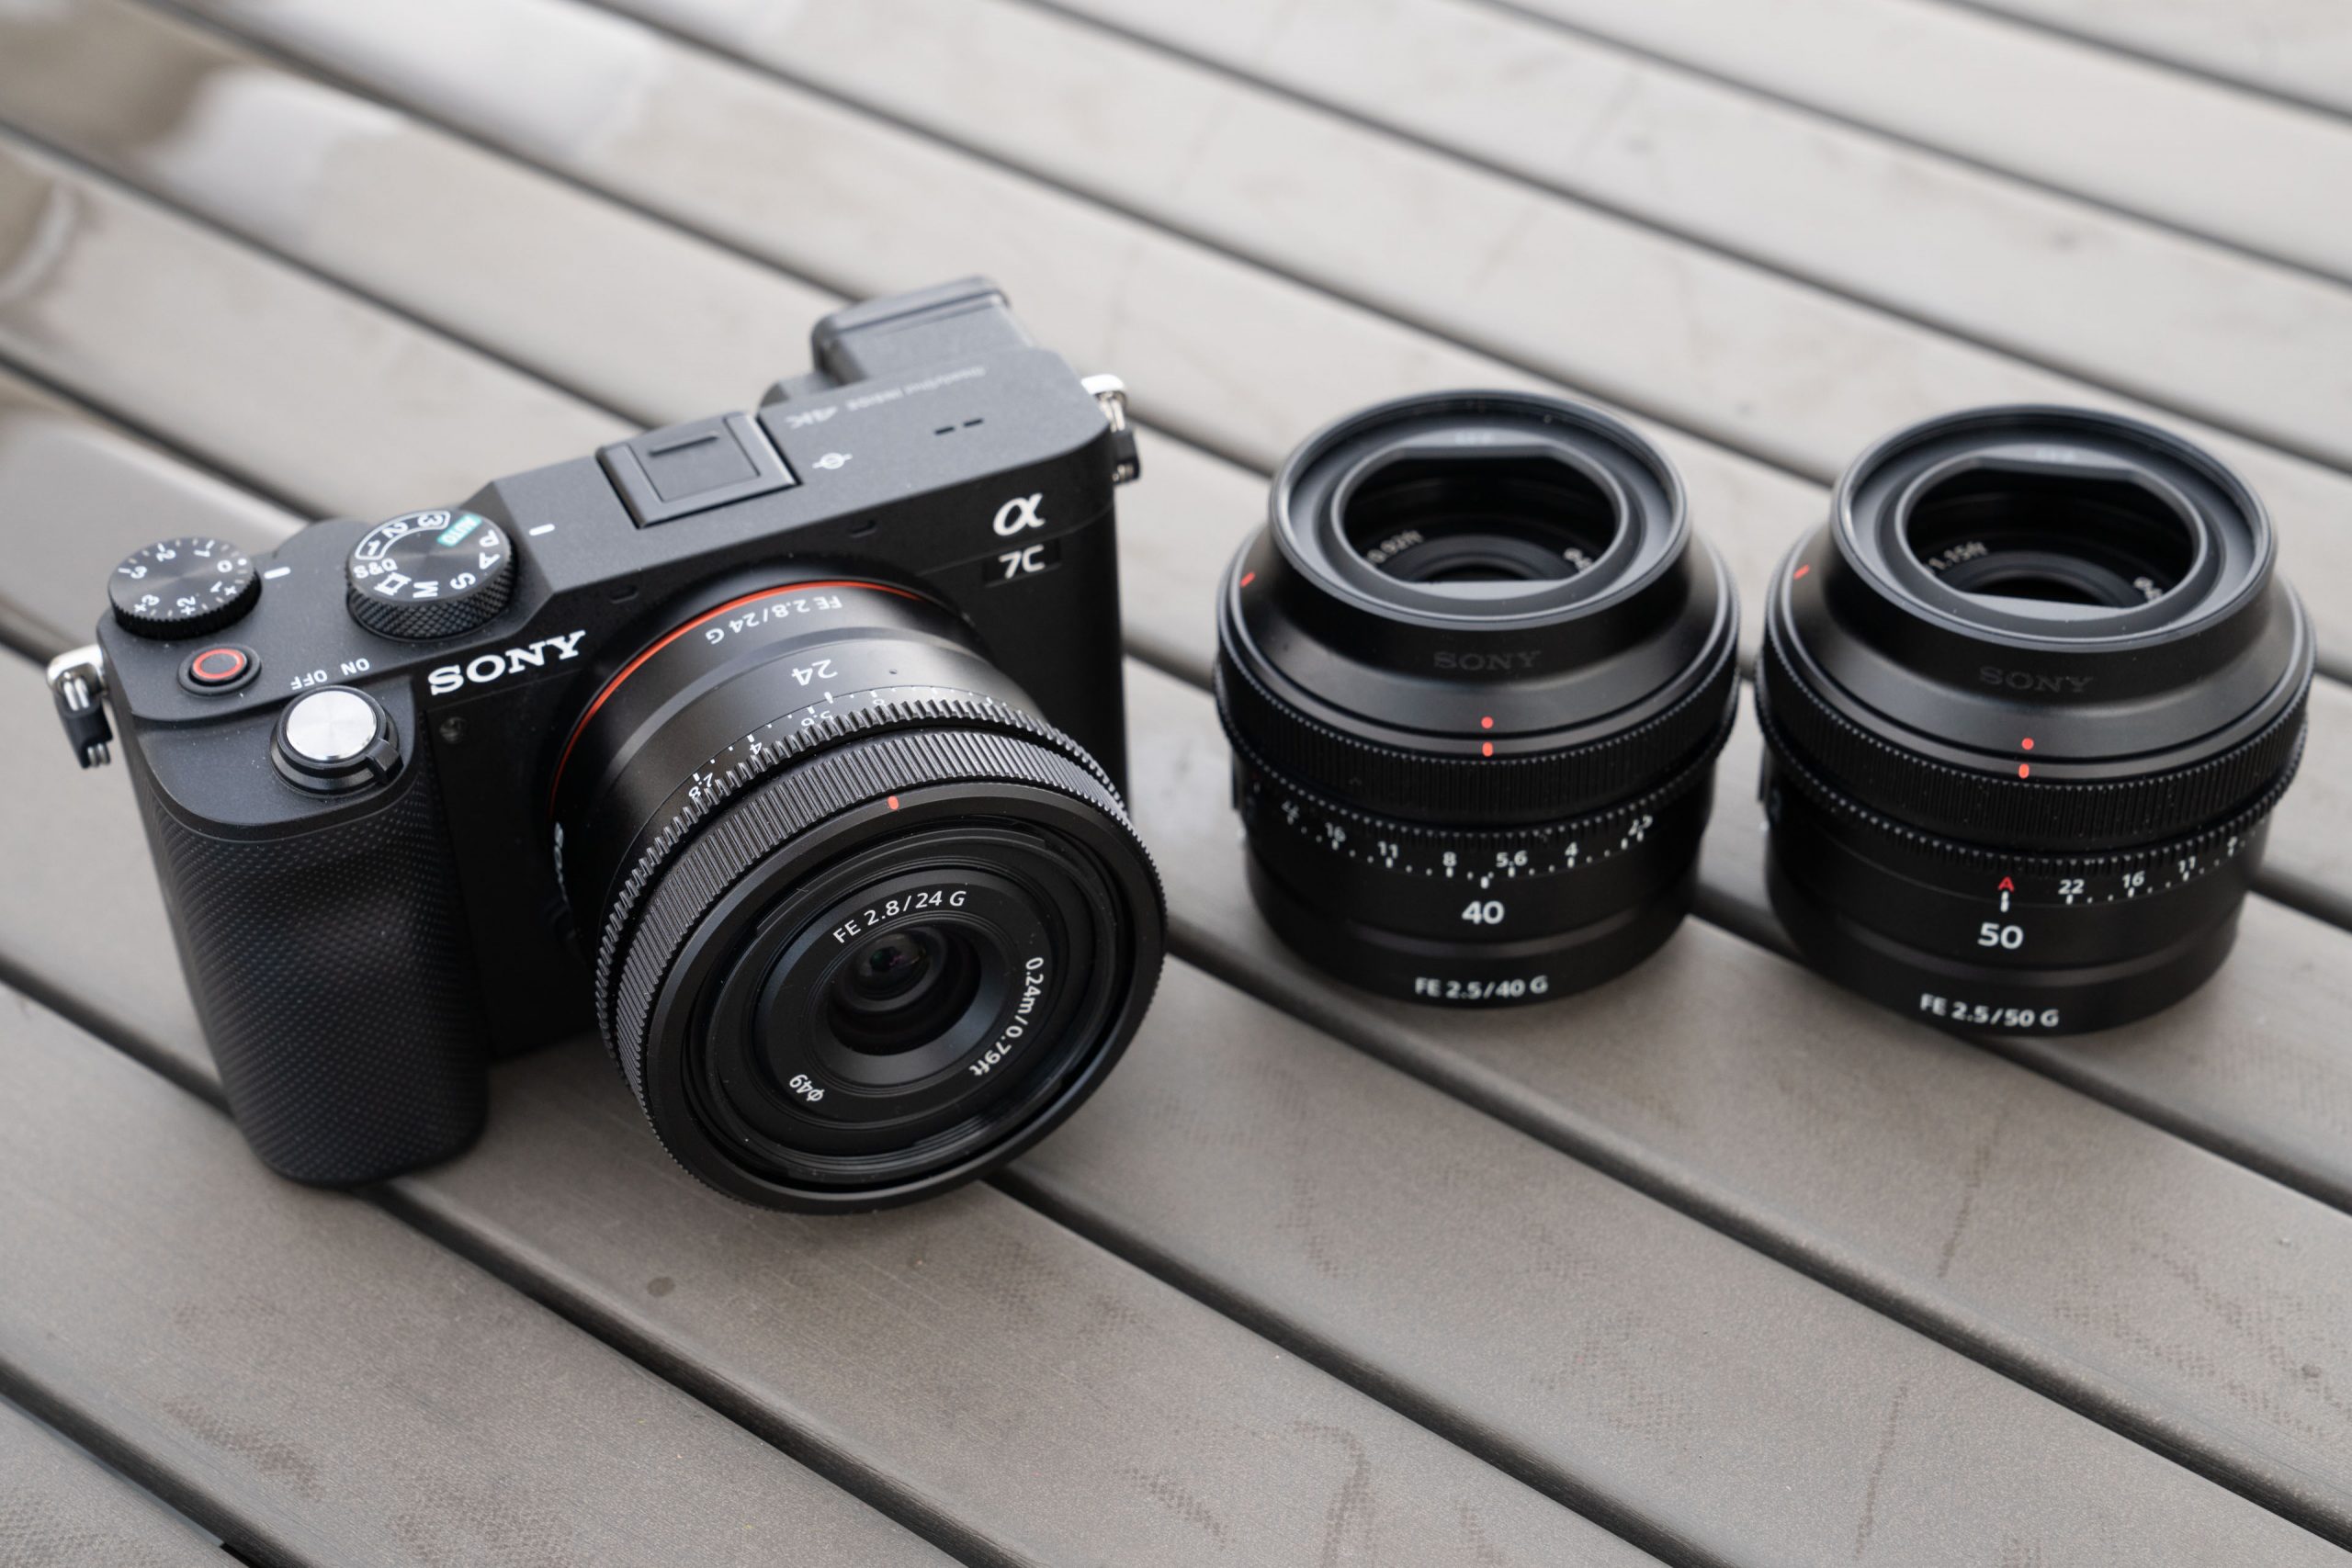 Ba ống kính Sony một tiêu cự 24mm F2.8 G, 40mm F2.5 G và 50mm F2.5 G ra mắt